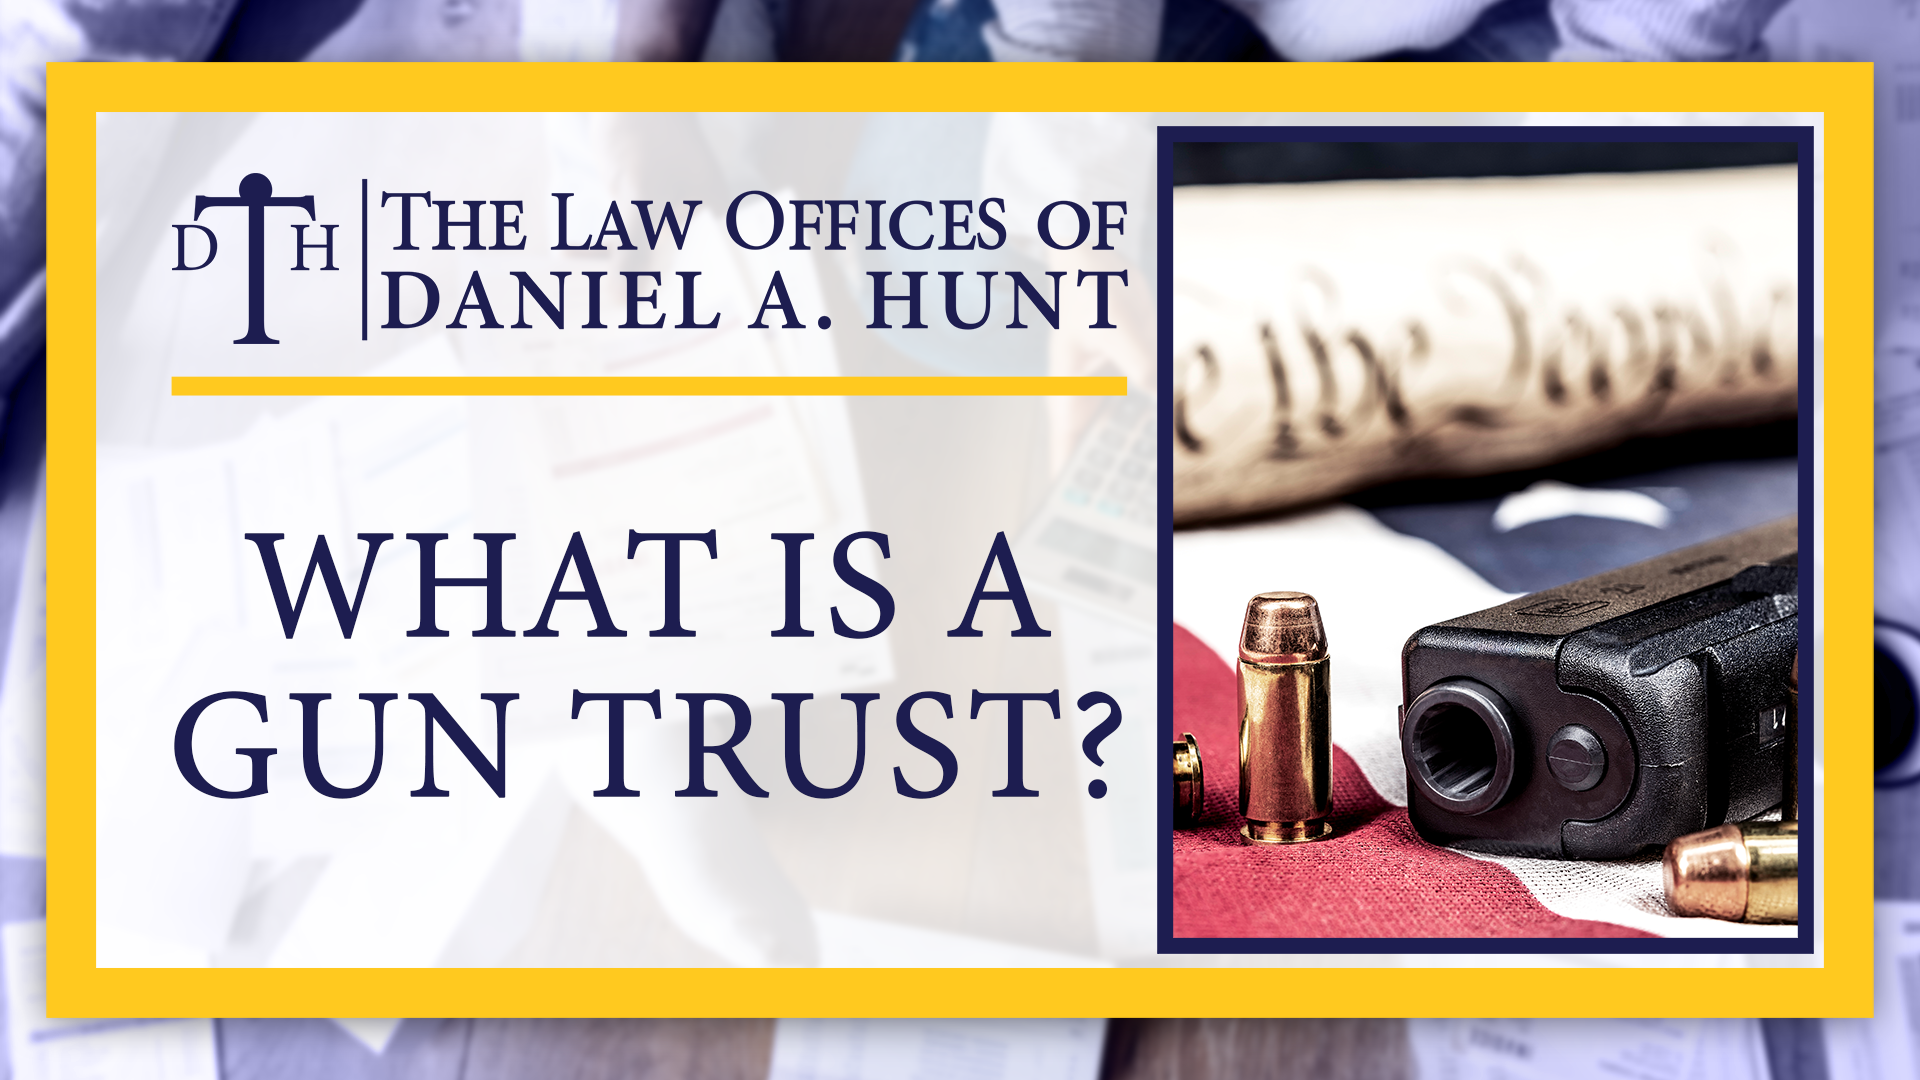 What is a gun trust?